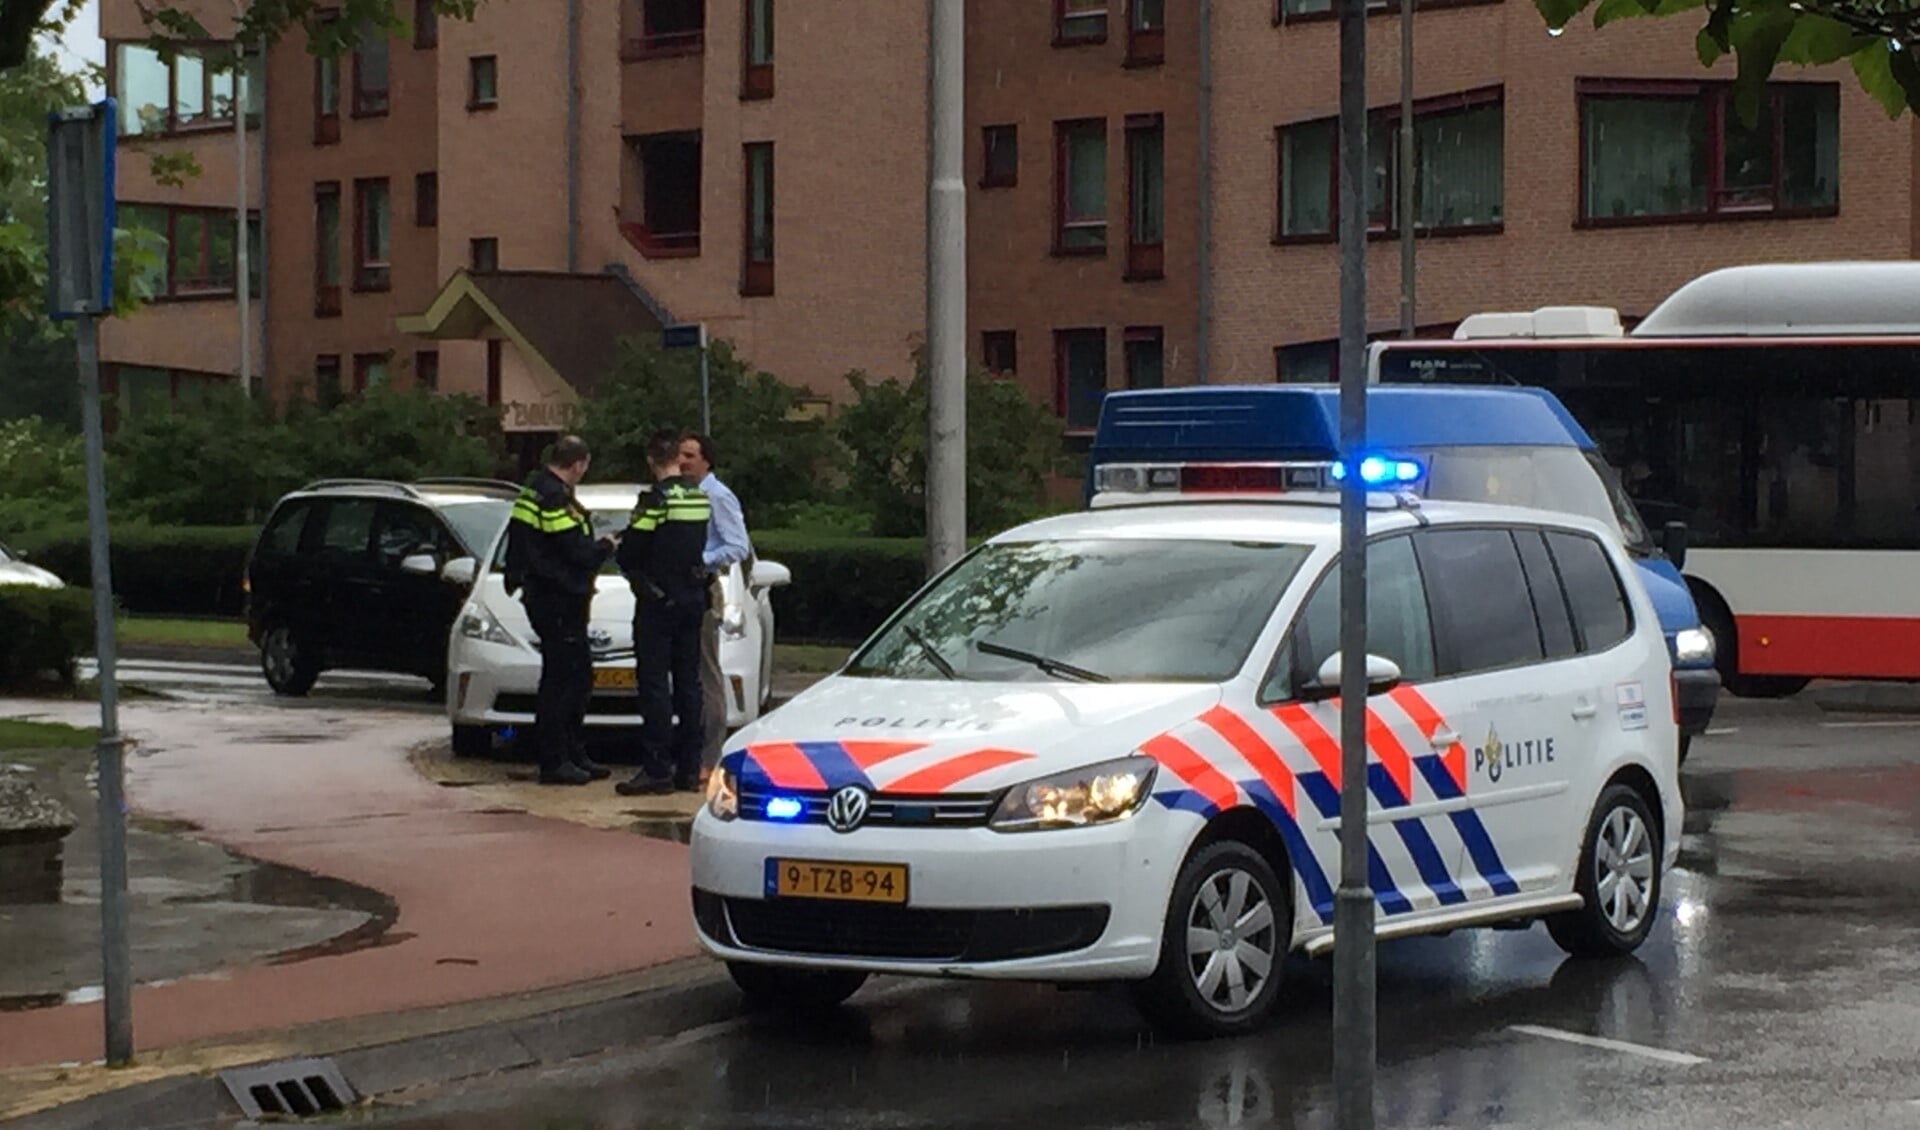 De politie was snel ter plekke. Foto: Martijn Mastenbroek